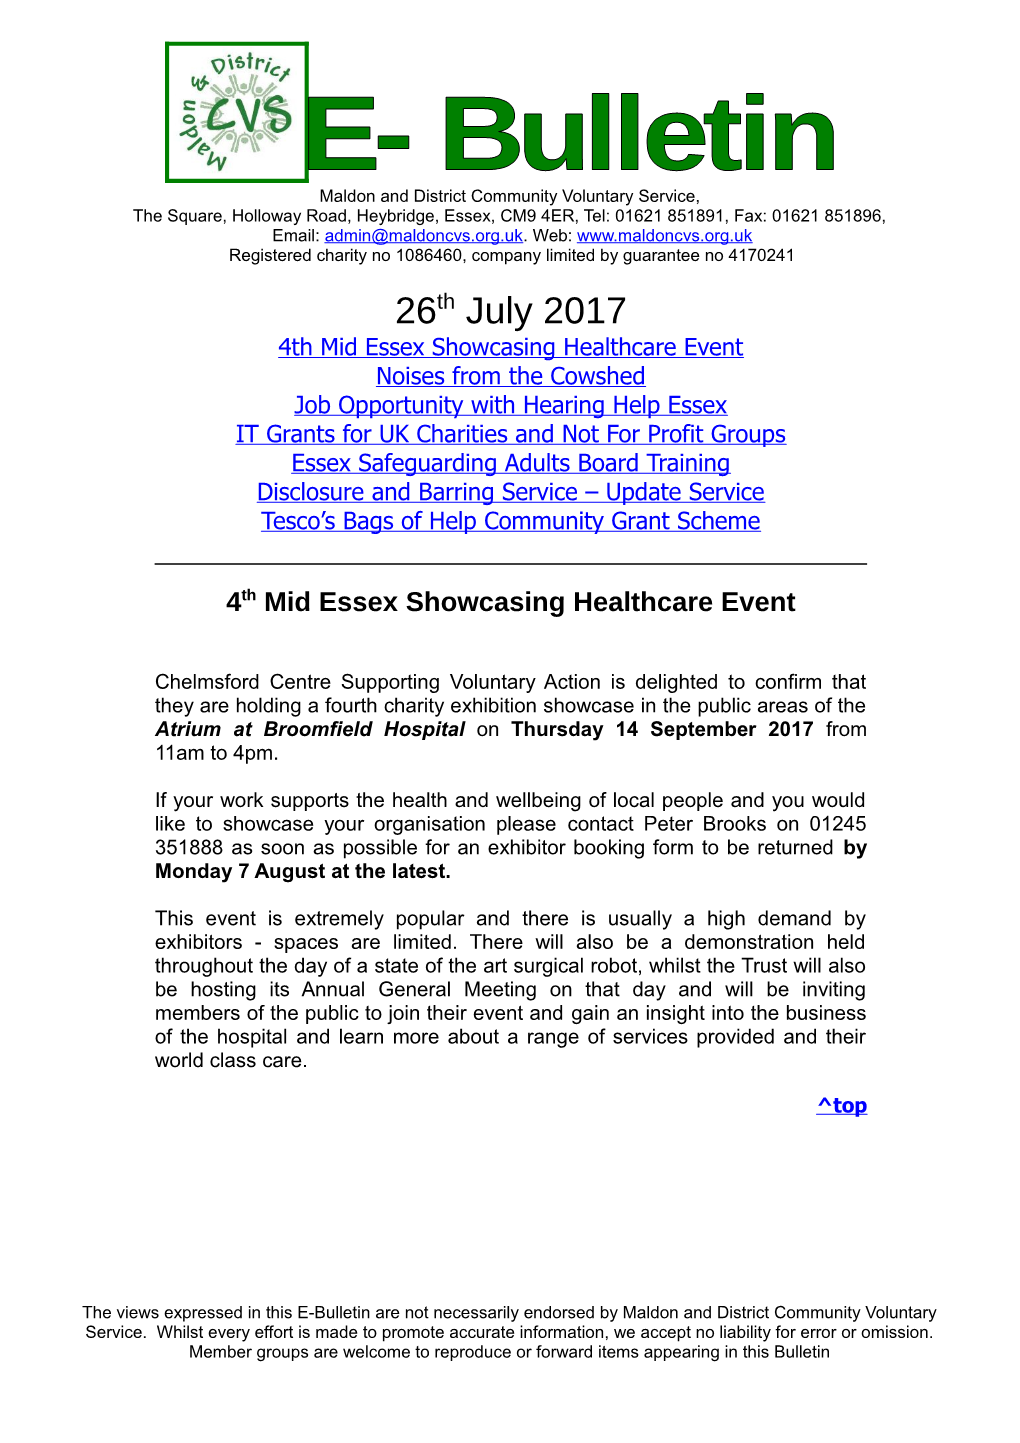 4Th Mid Essex Showcasing Healthcare Event